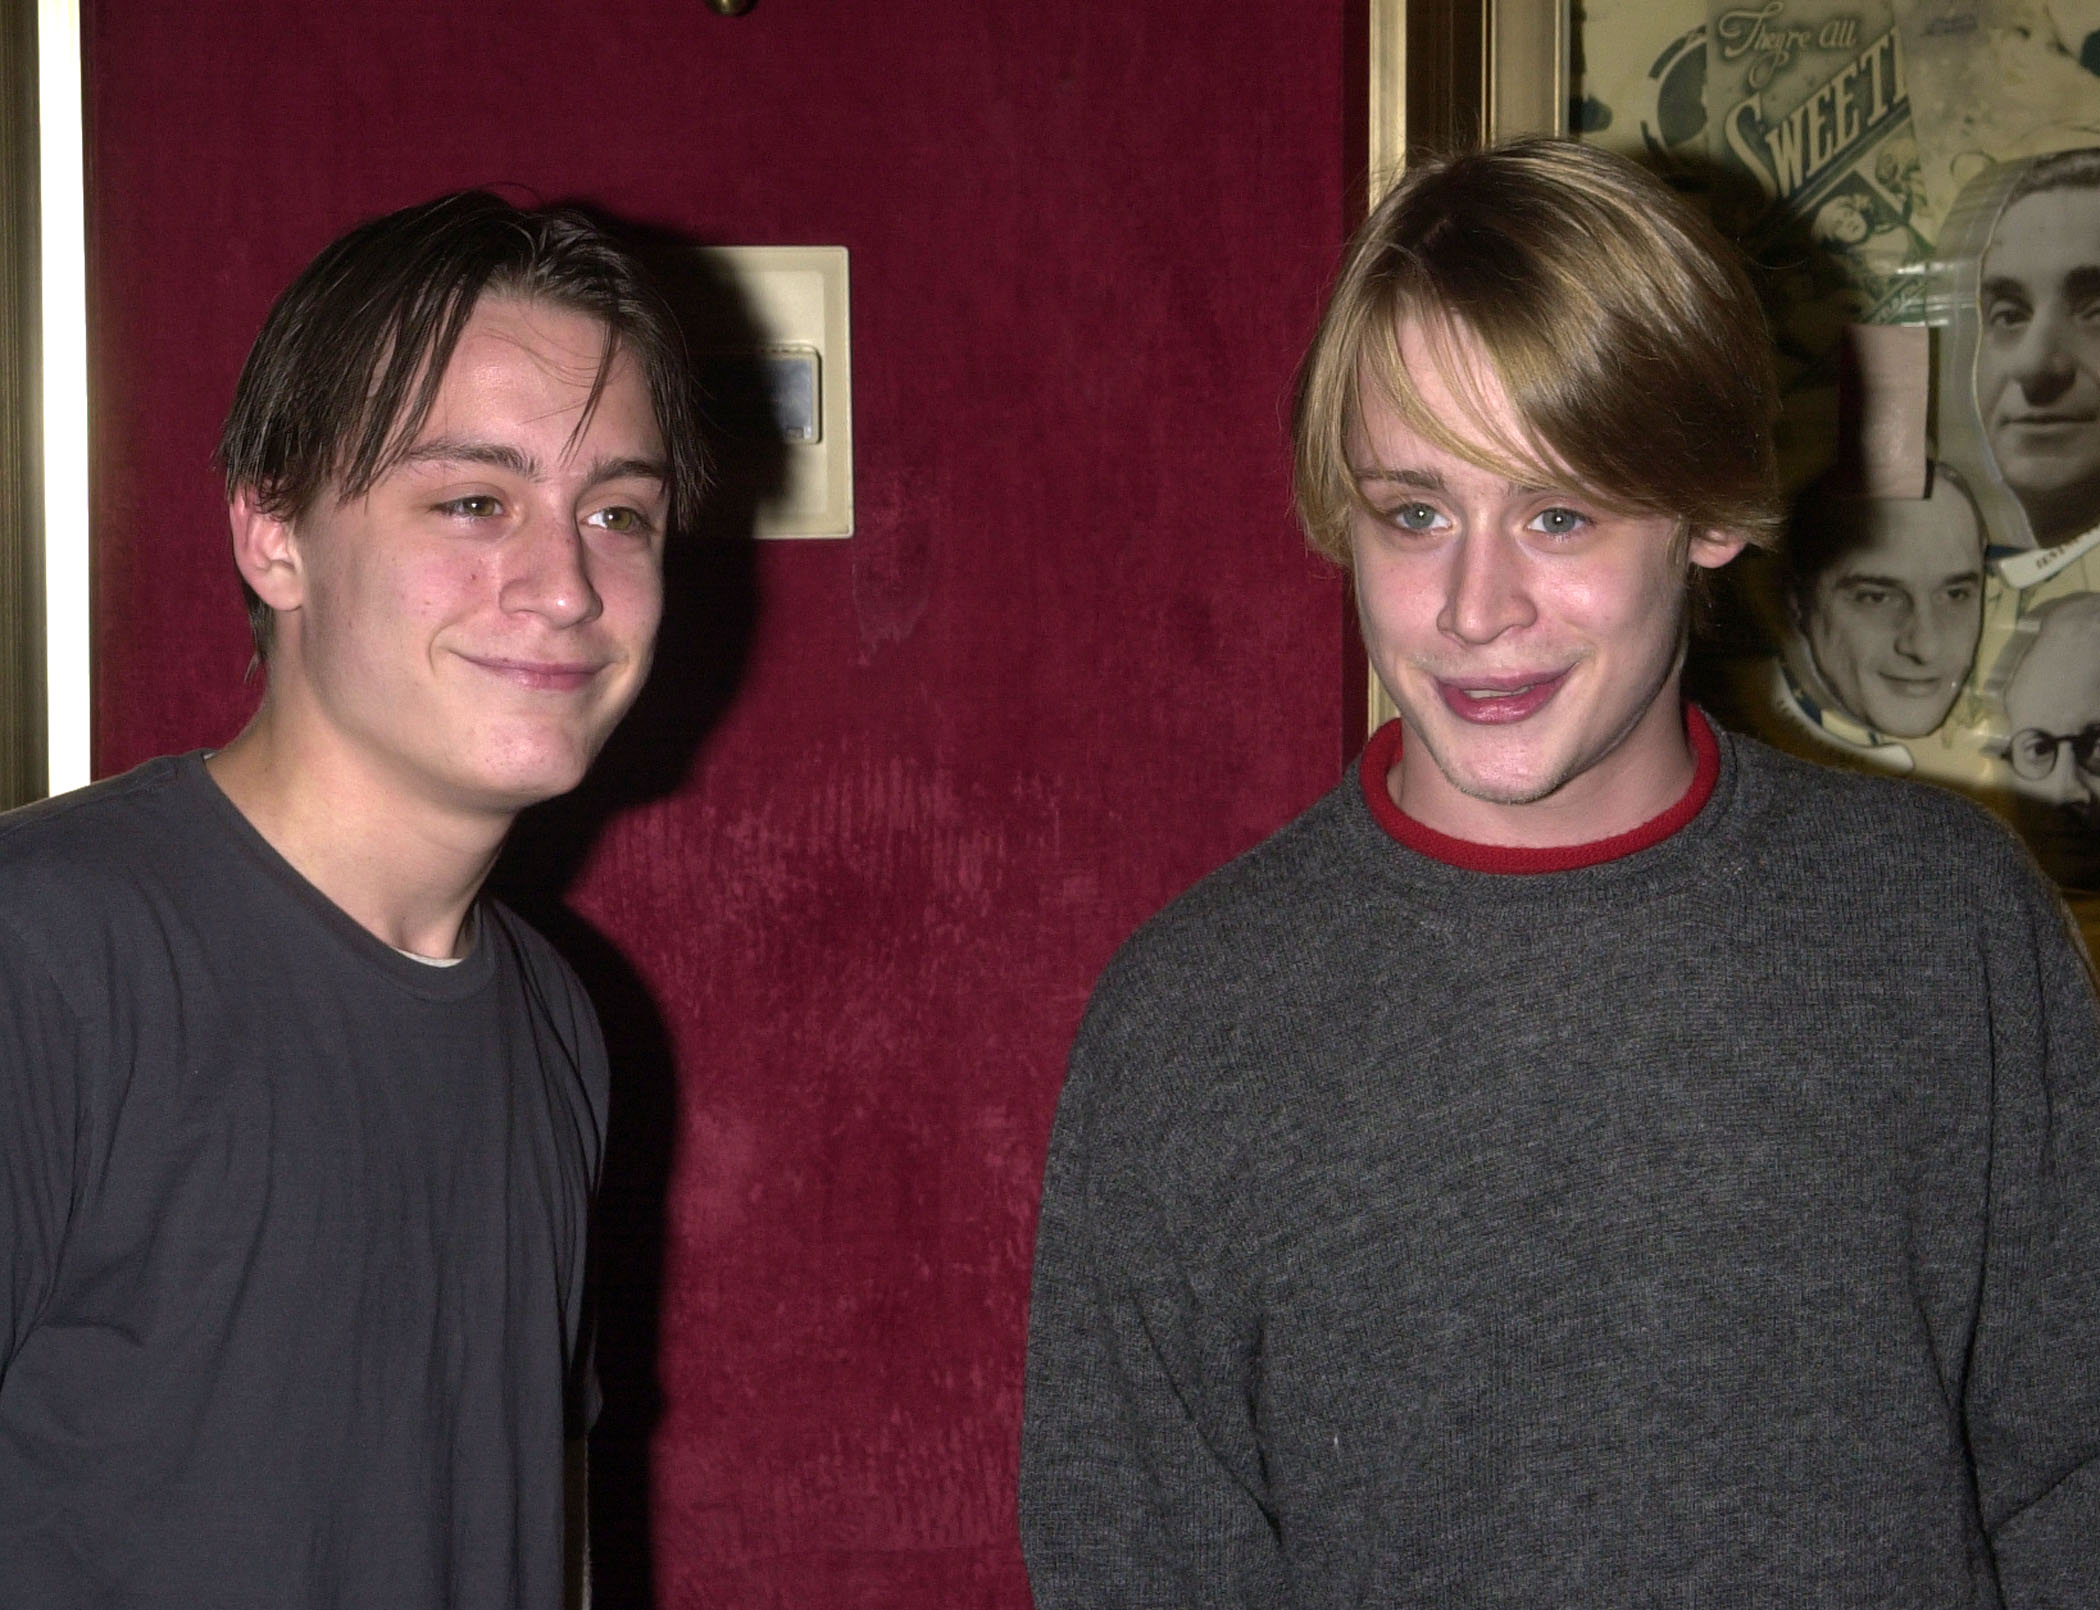 Kieran y Macaulay Culkin asisten al estreno de "Serendipity" en Nueva York el 3 de octubre de 2001 | Fuente: Getty Images